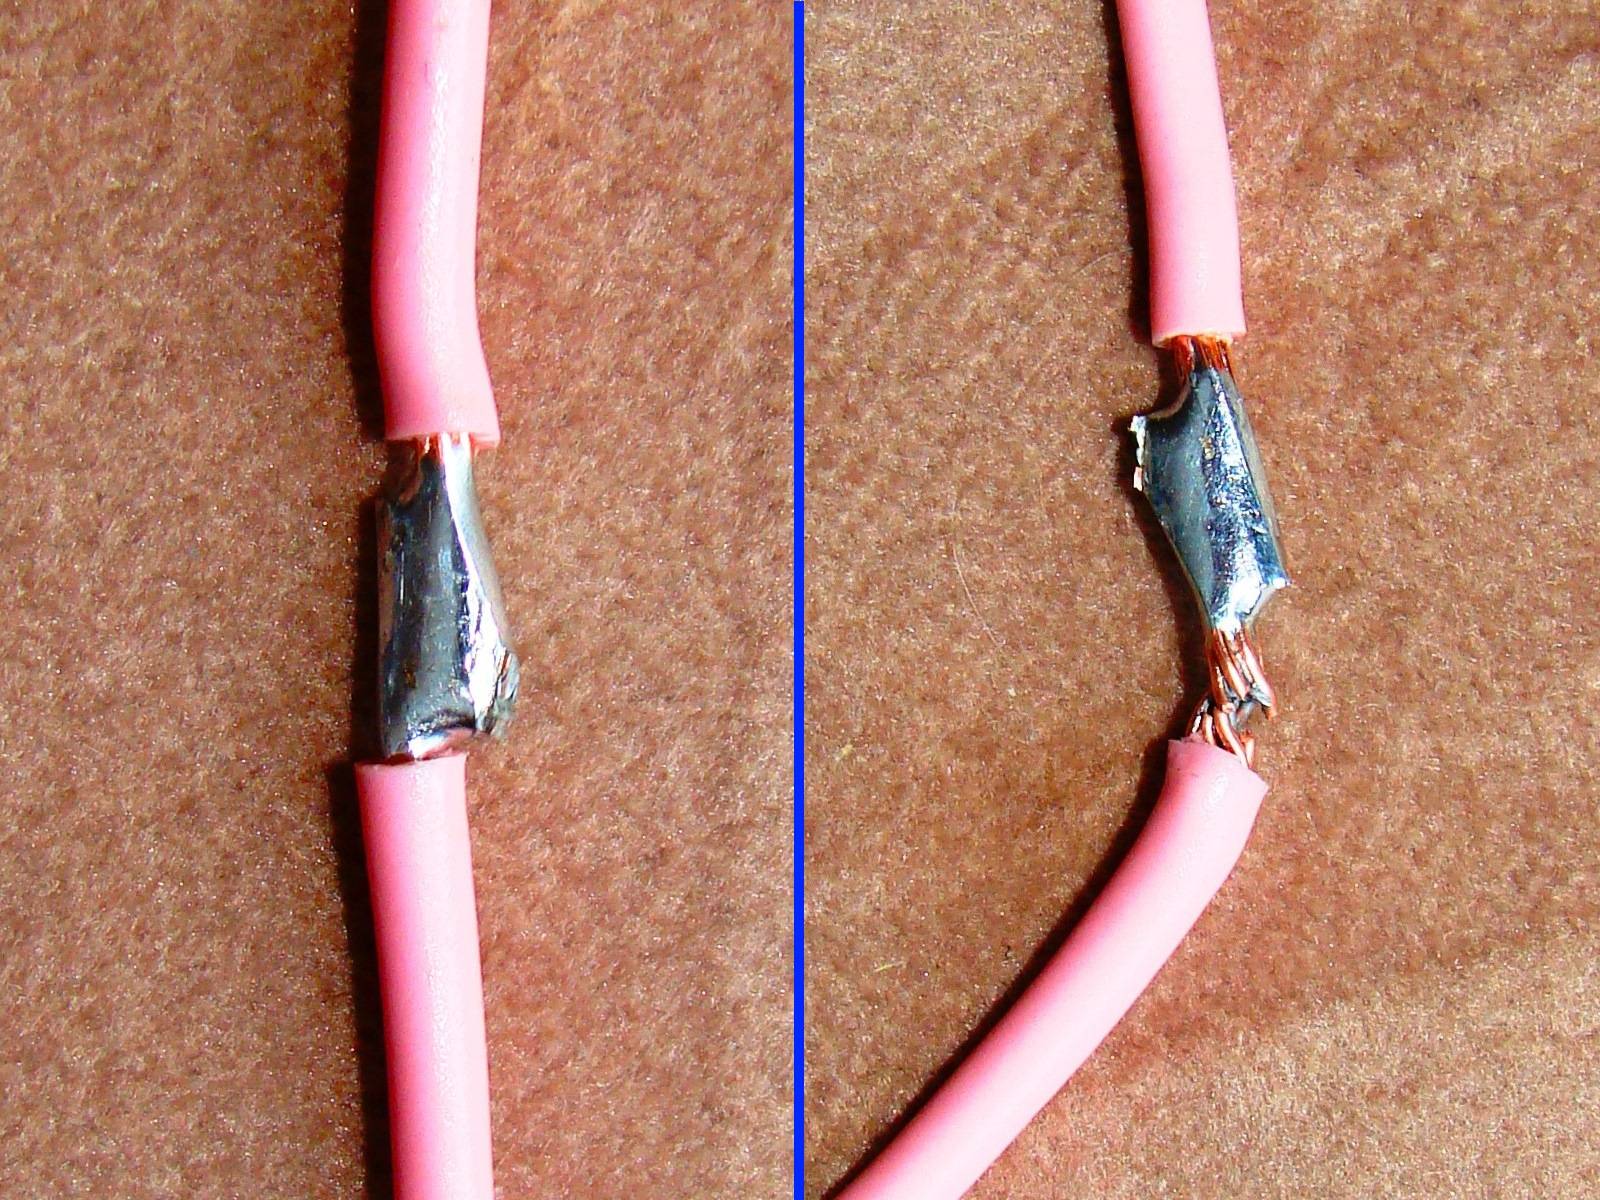 Соединение проводов: как соединить провода между собой, выбрать вид и способ соединения